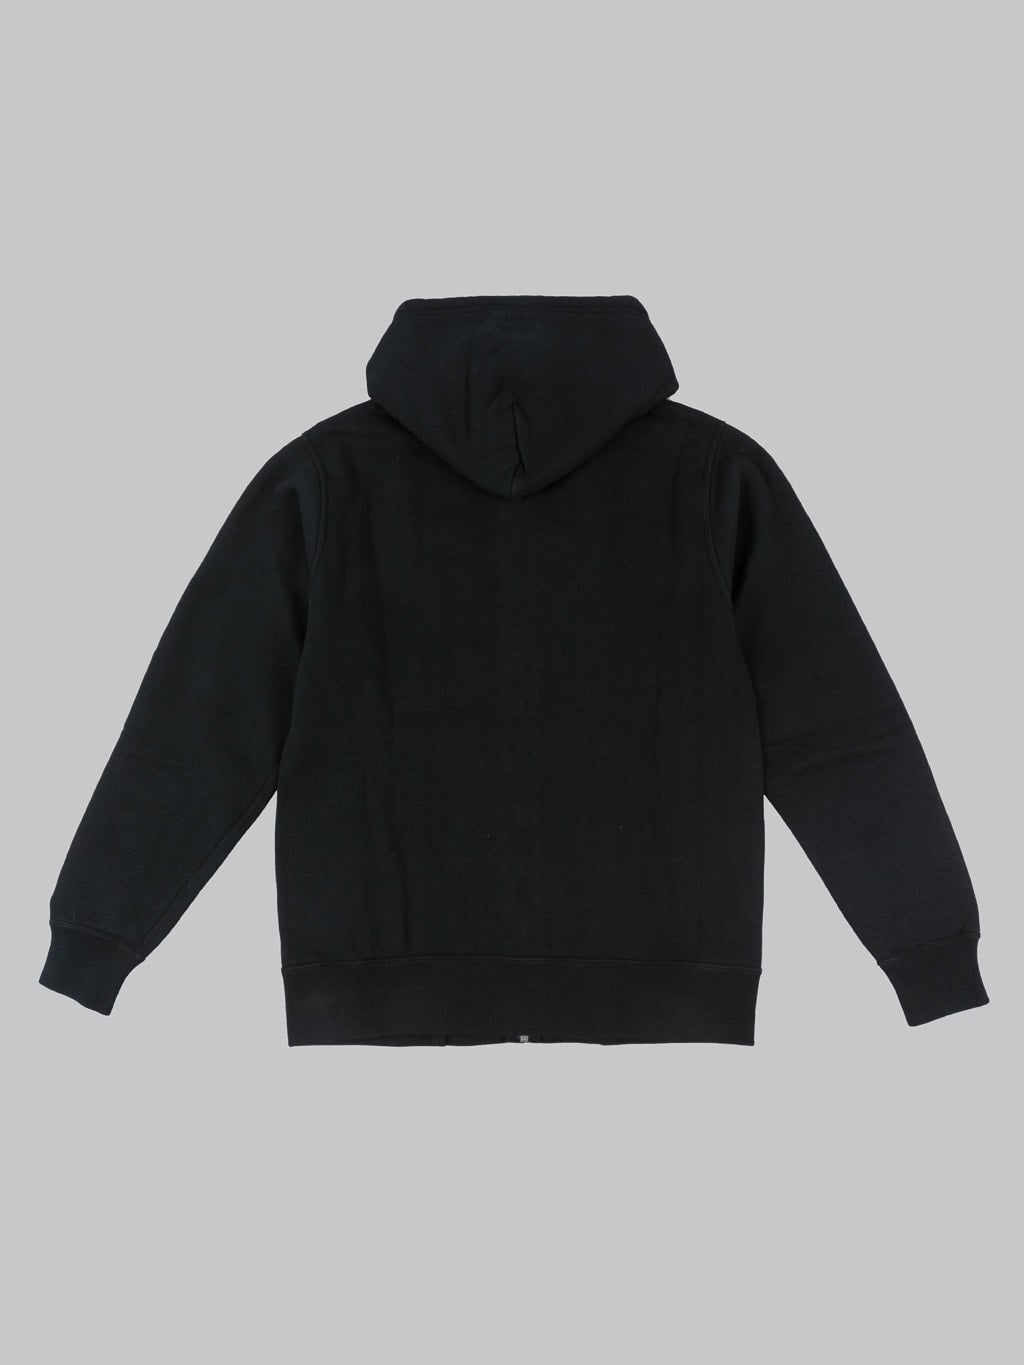 the flat head thermal zip hoodie black back